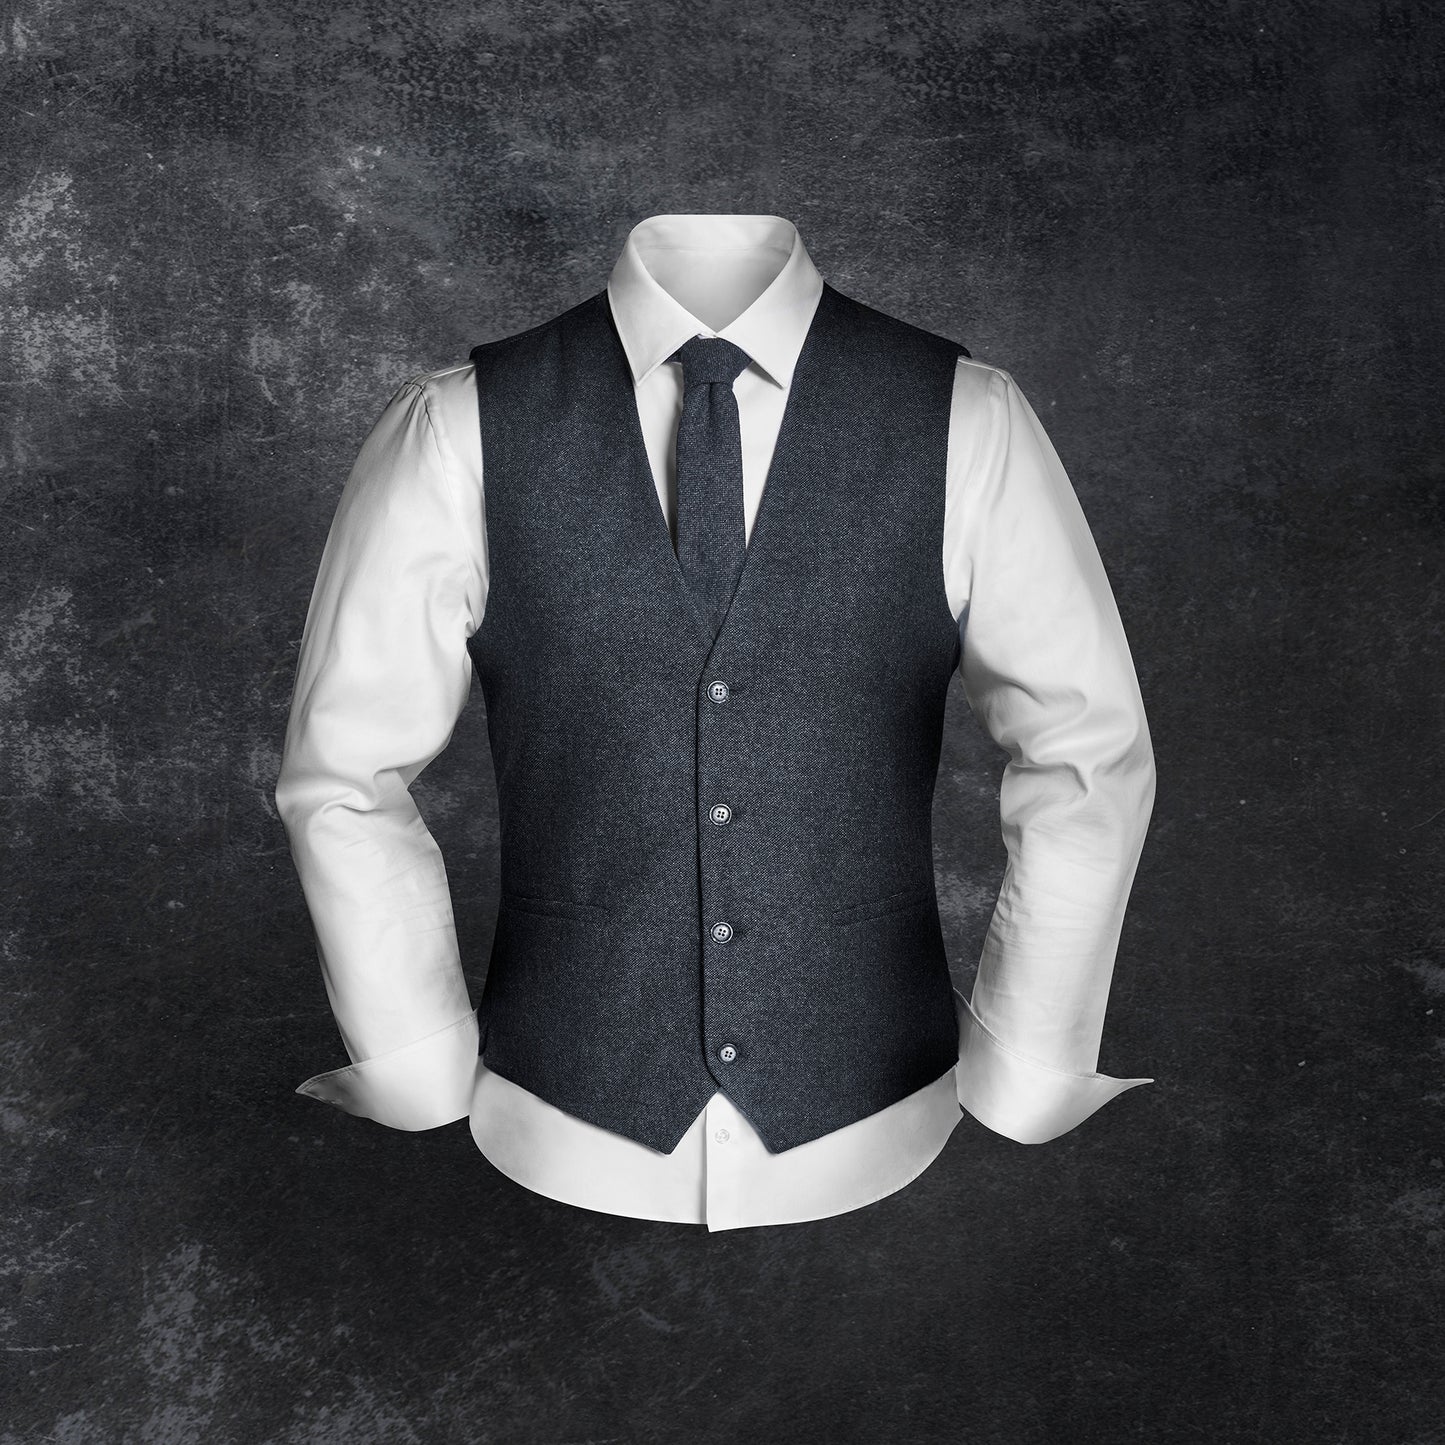 Vintage-Outfit inklusive Weste, Krawatte & Einstecktuch in Wollmischung